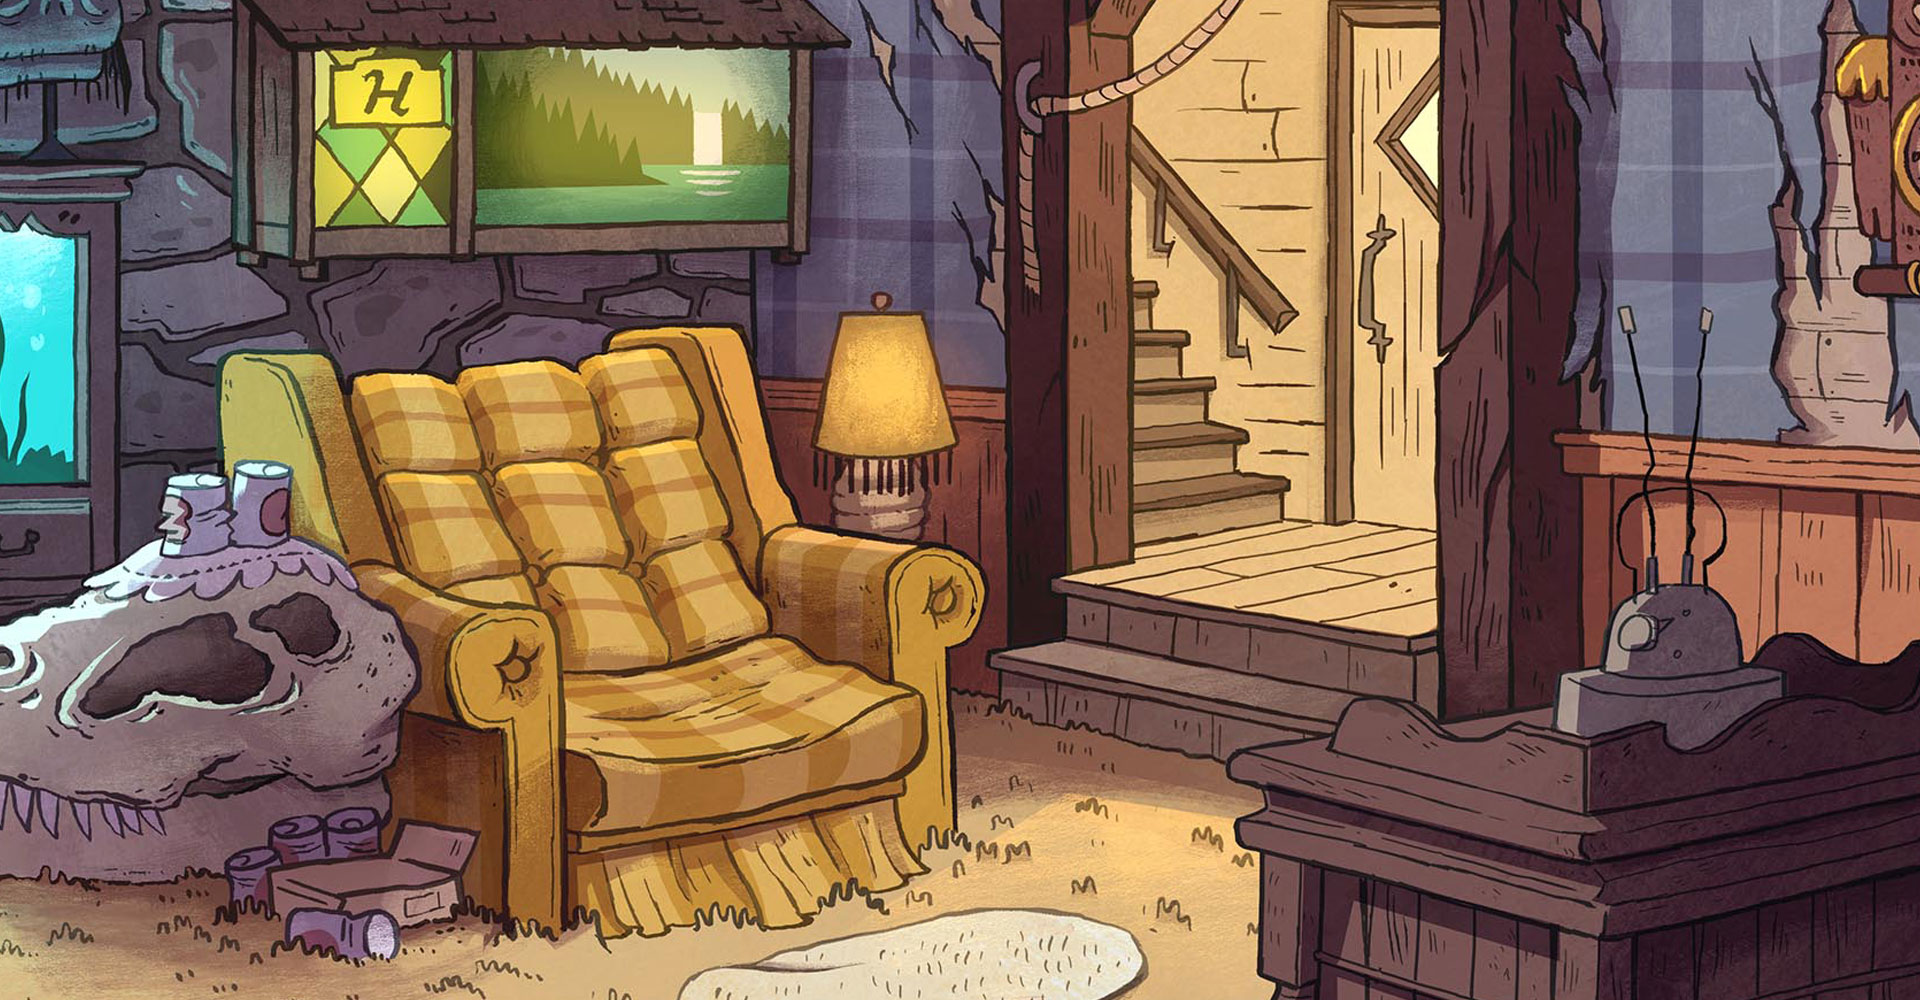 Image Mystery shack living room bg.JPG Gravity Falls Wiki